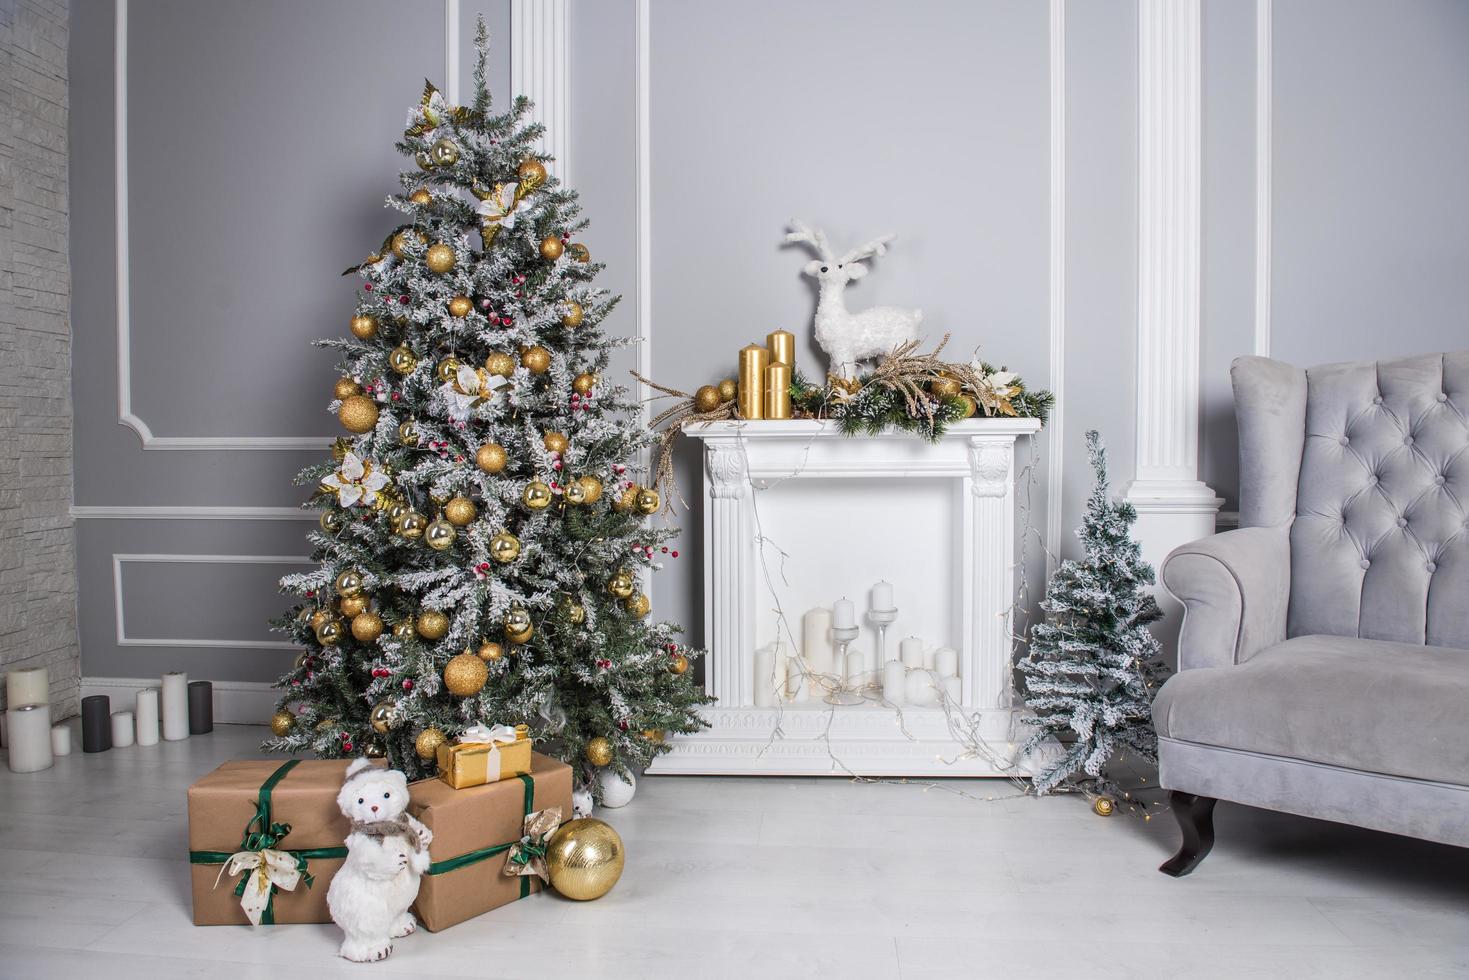 sala de estar decorada con árbol de navidad, regalos y decoración navideña foto